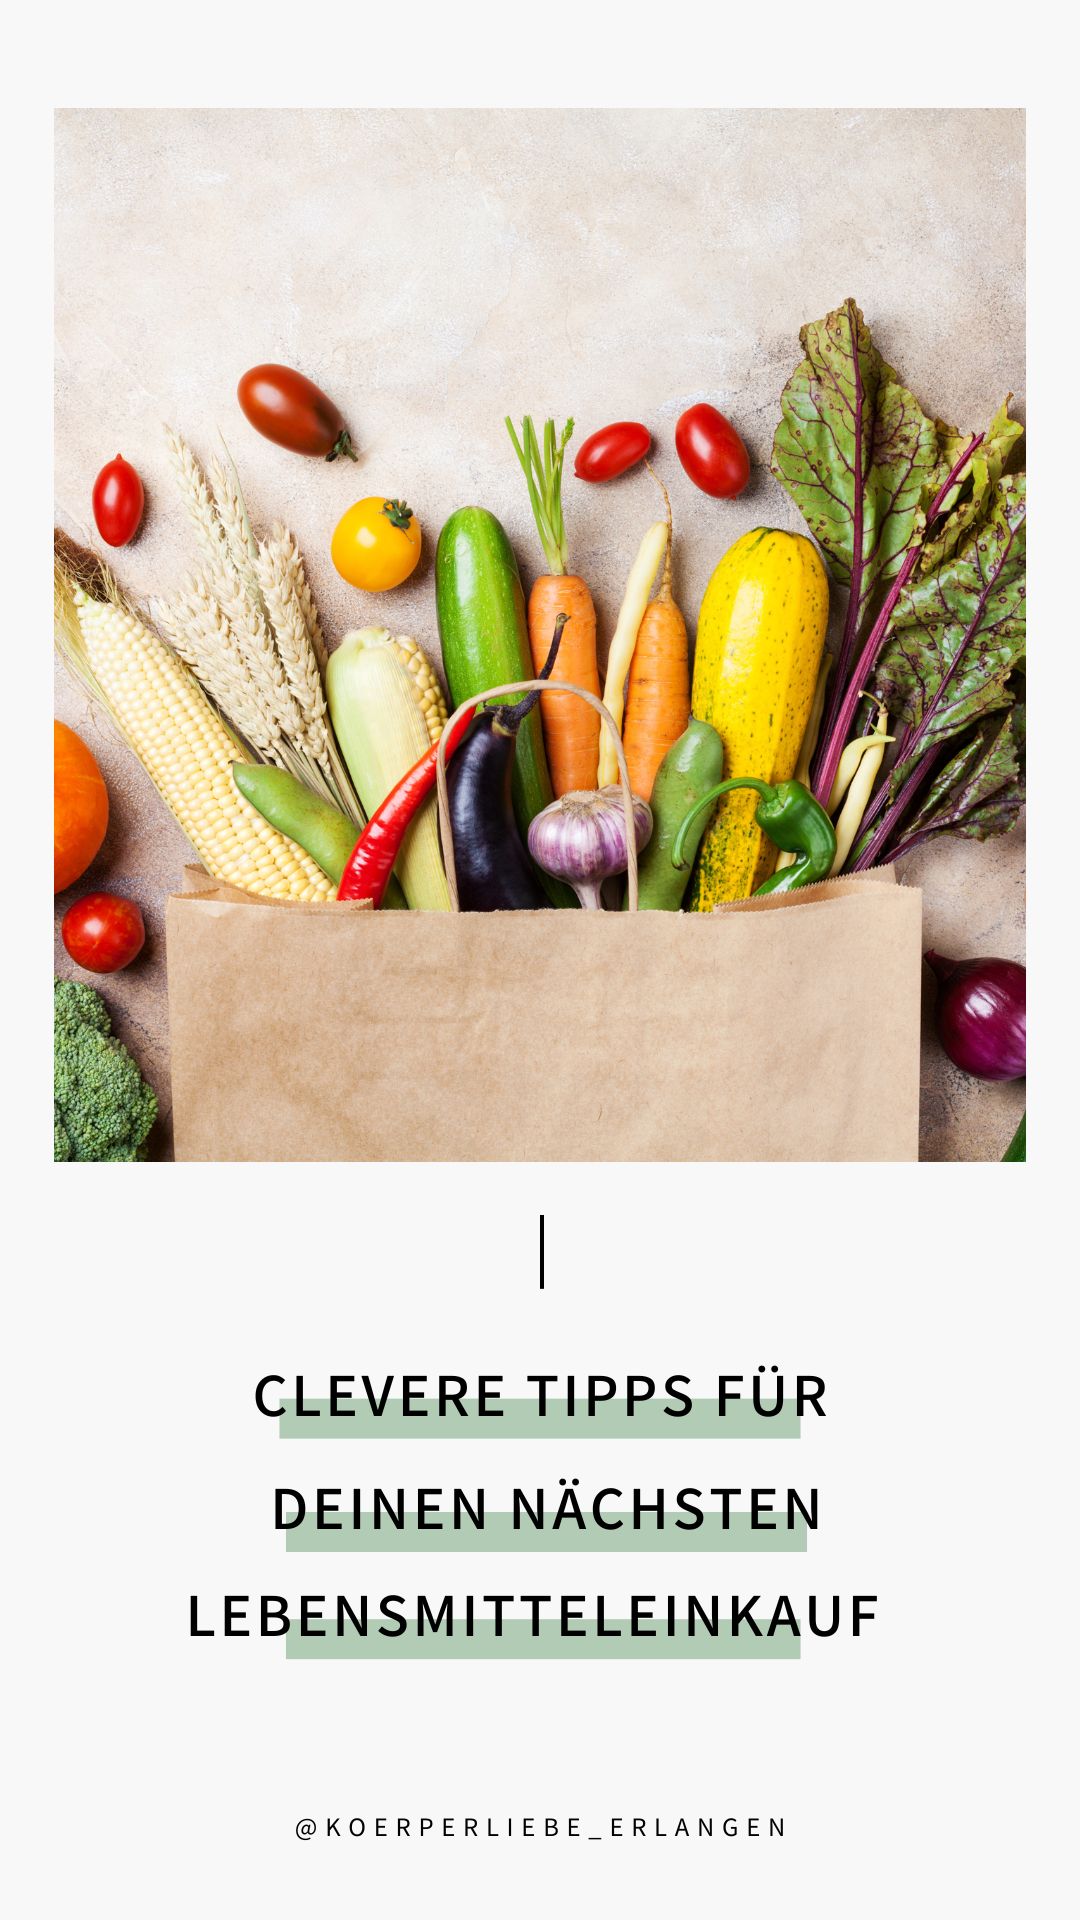 Featured image for “Clevere Tipps für deinen nächsten Lebensmitteleinkauf”